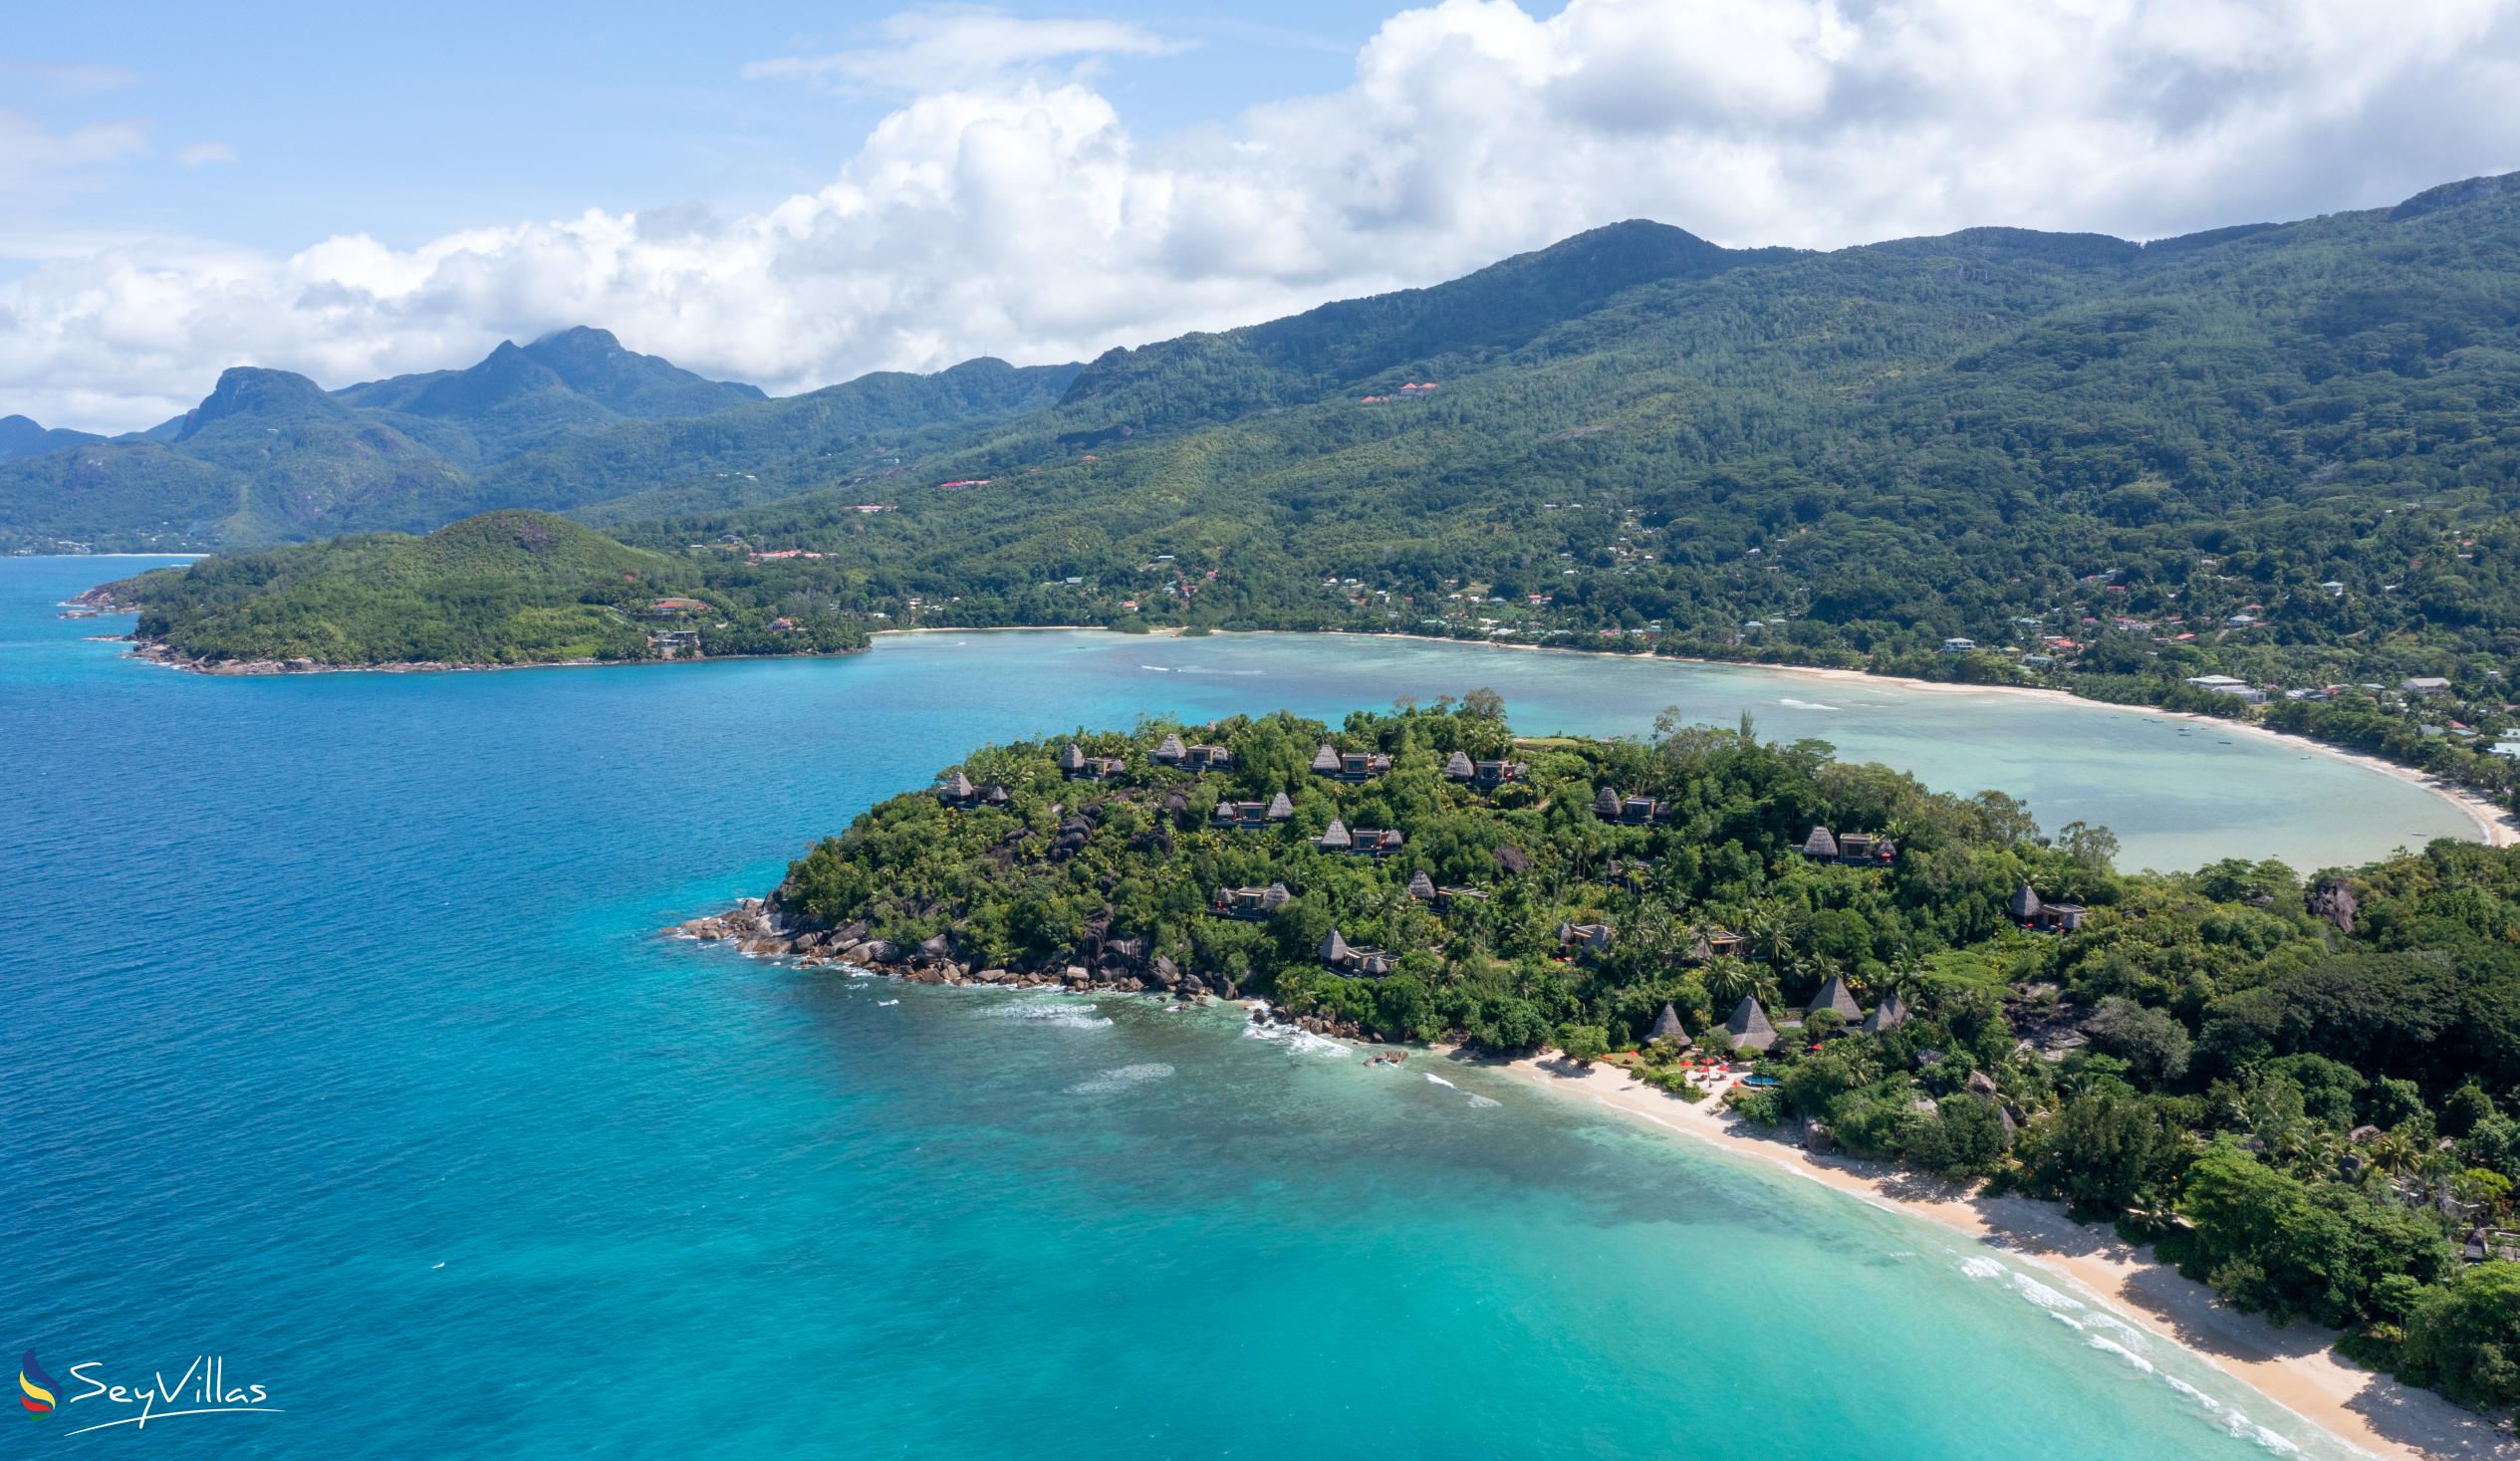 Photo 45: Anantara Maia Seychelles Villas - Location - Mahé (Seychelles)